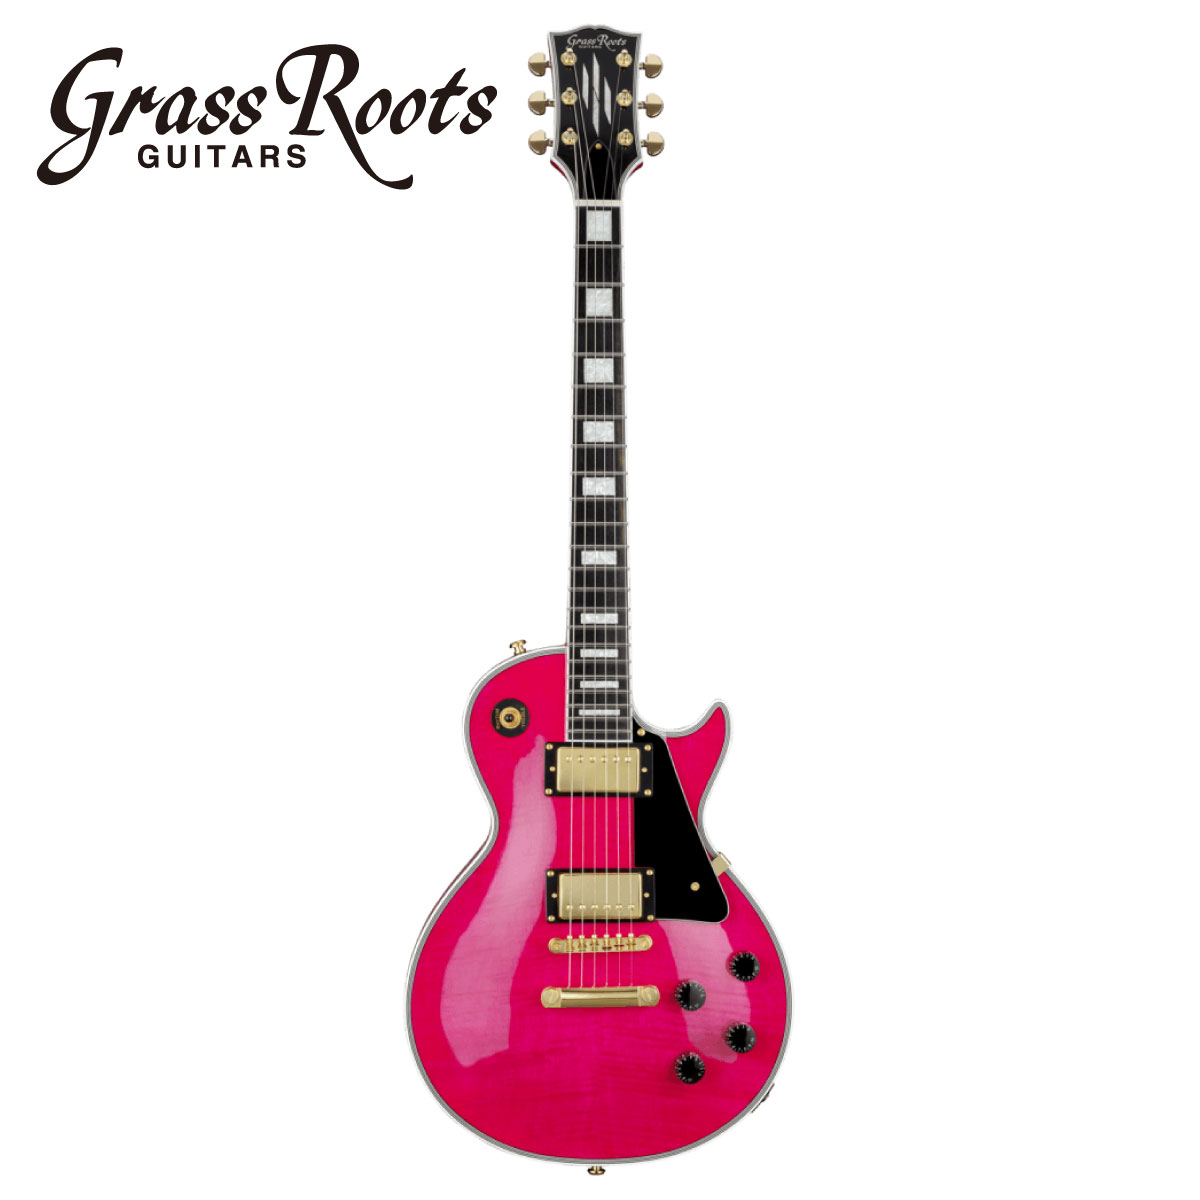 楽天市場 Grassroots G Lp 65c Fm 新品 シースルーピンク グラスルーツ Espブランド Les Paul レスポールタイプ See Thru Pink Electric Guitar エレキギター ギタープラネットonline